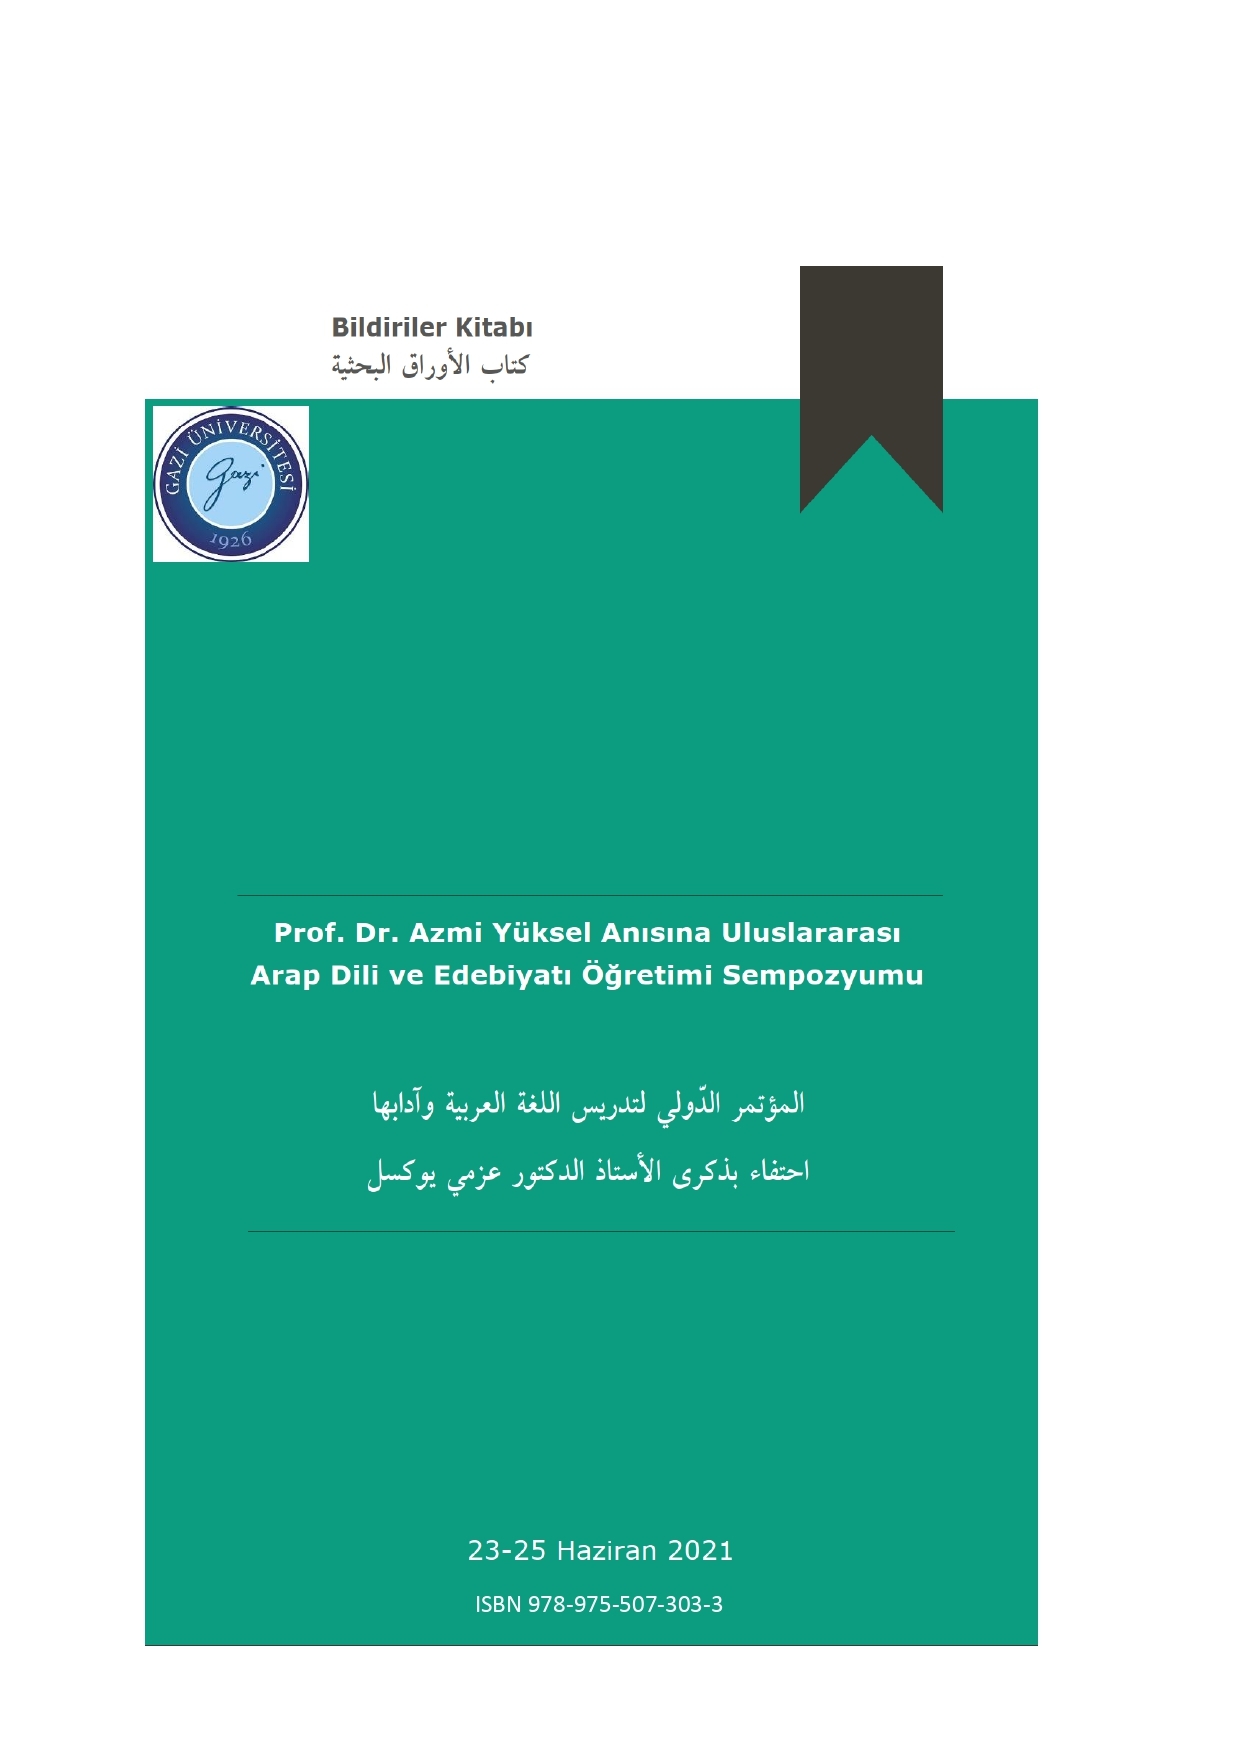 Prof. Dr. Azmi Yüksel Anısına Uluslararası Arap Dili ve Edebiyatı Öğretimi Sempozyumu-1